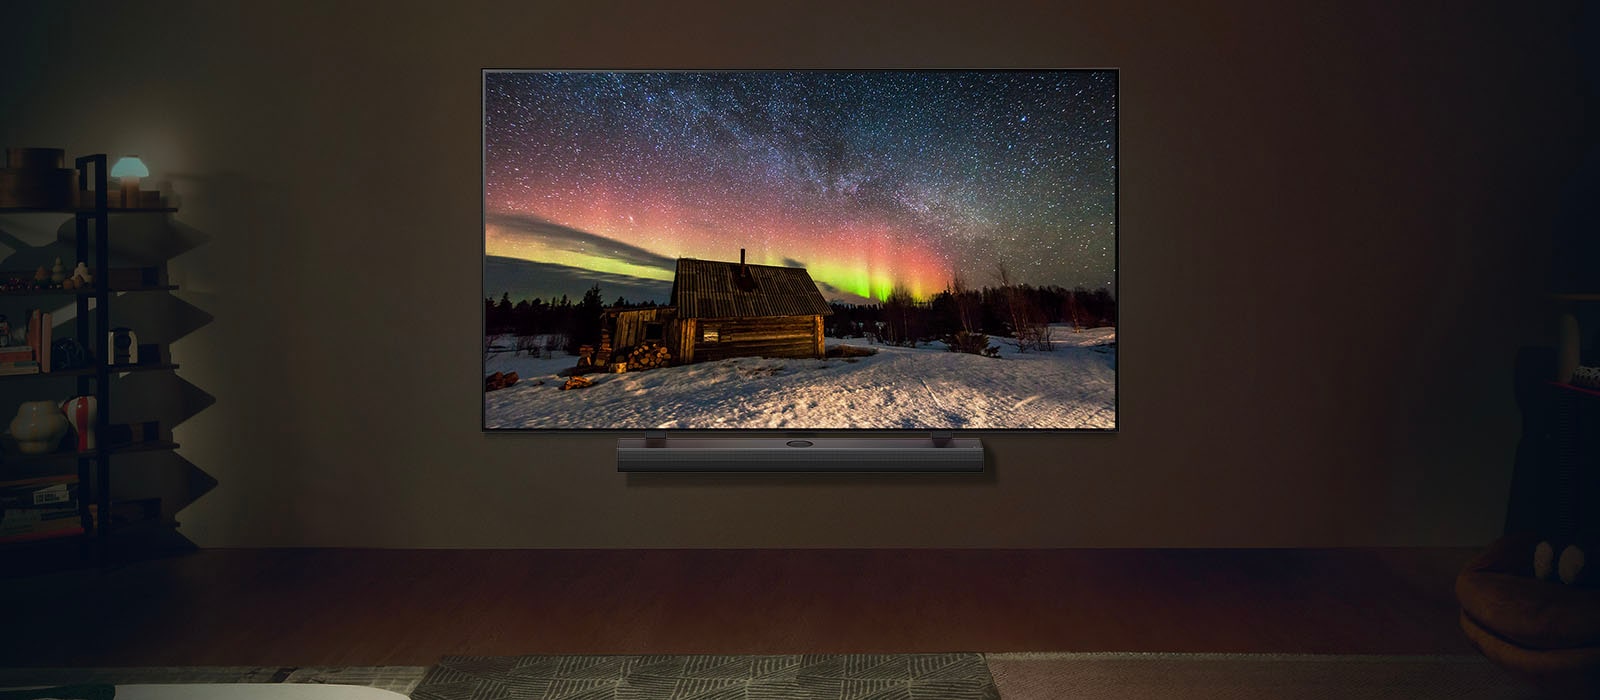 LG TV és LG hangprojektor képe egy modern nappaliban éjszaka. A sarki fény képe a képernyőn az ideális fényerővel jelenik meg.